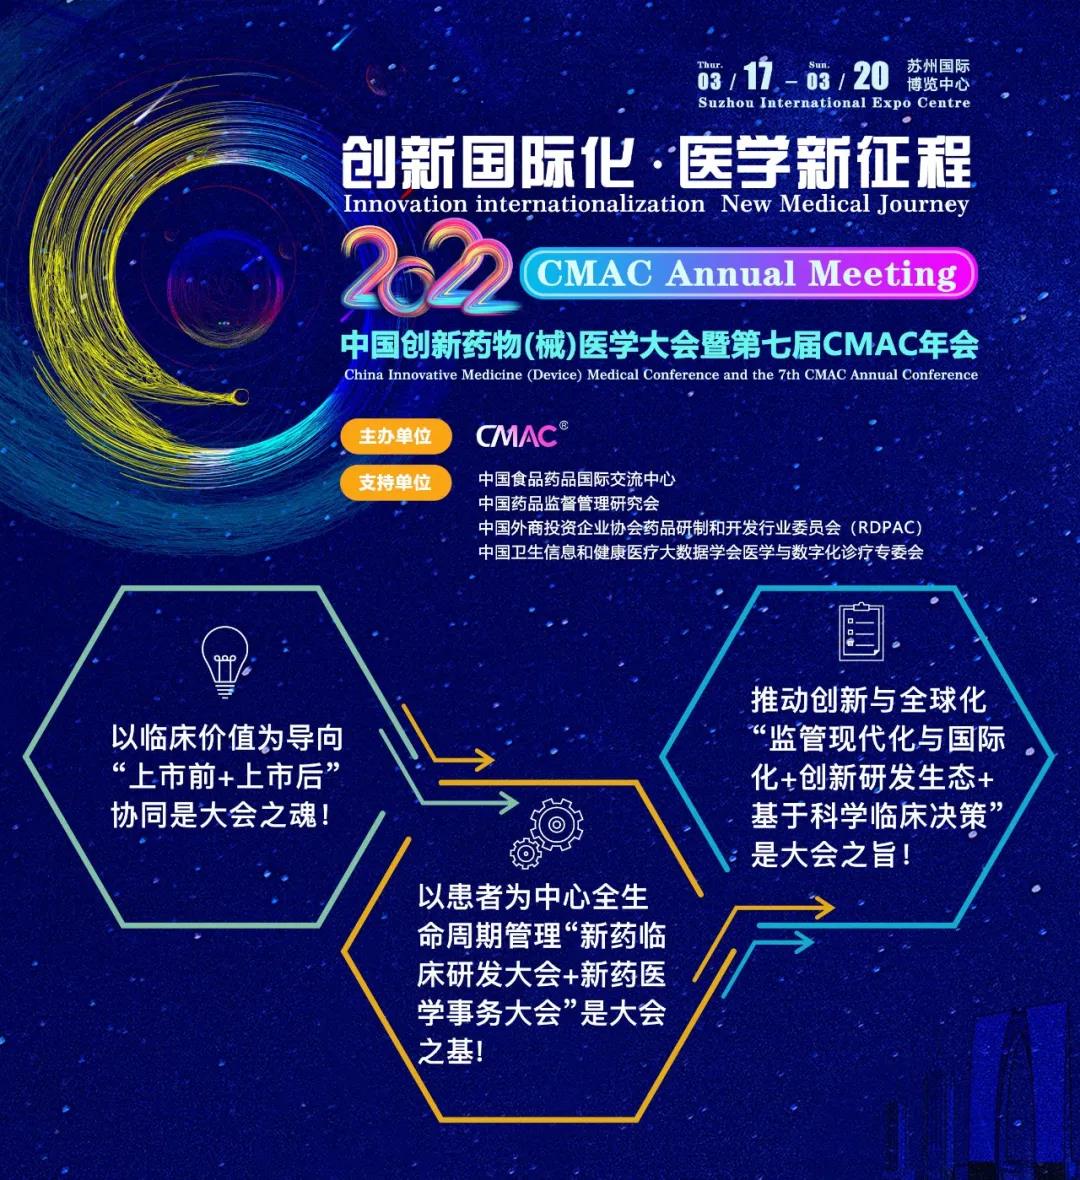 2022中国创新药物 (械) 医学大会暨第七届CMAC年会